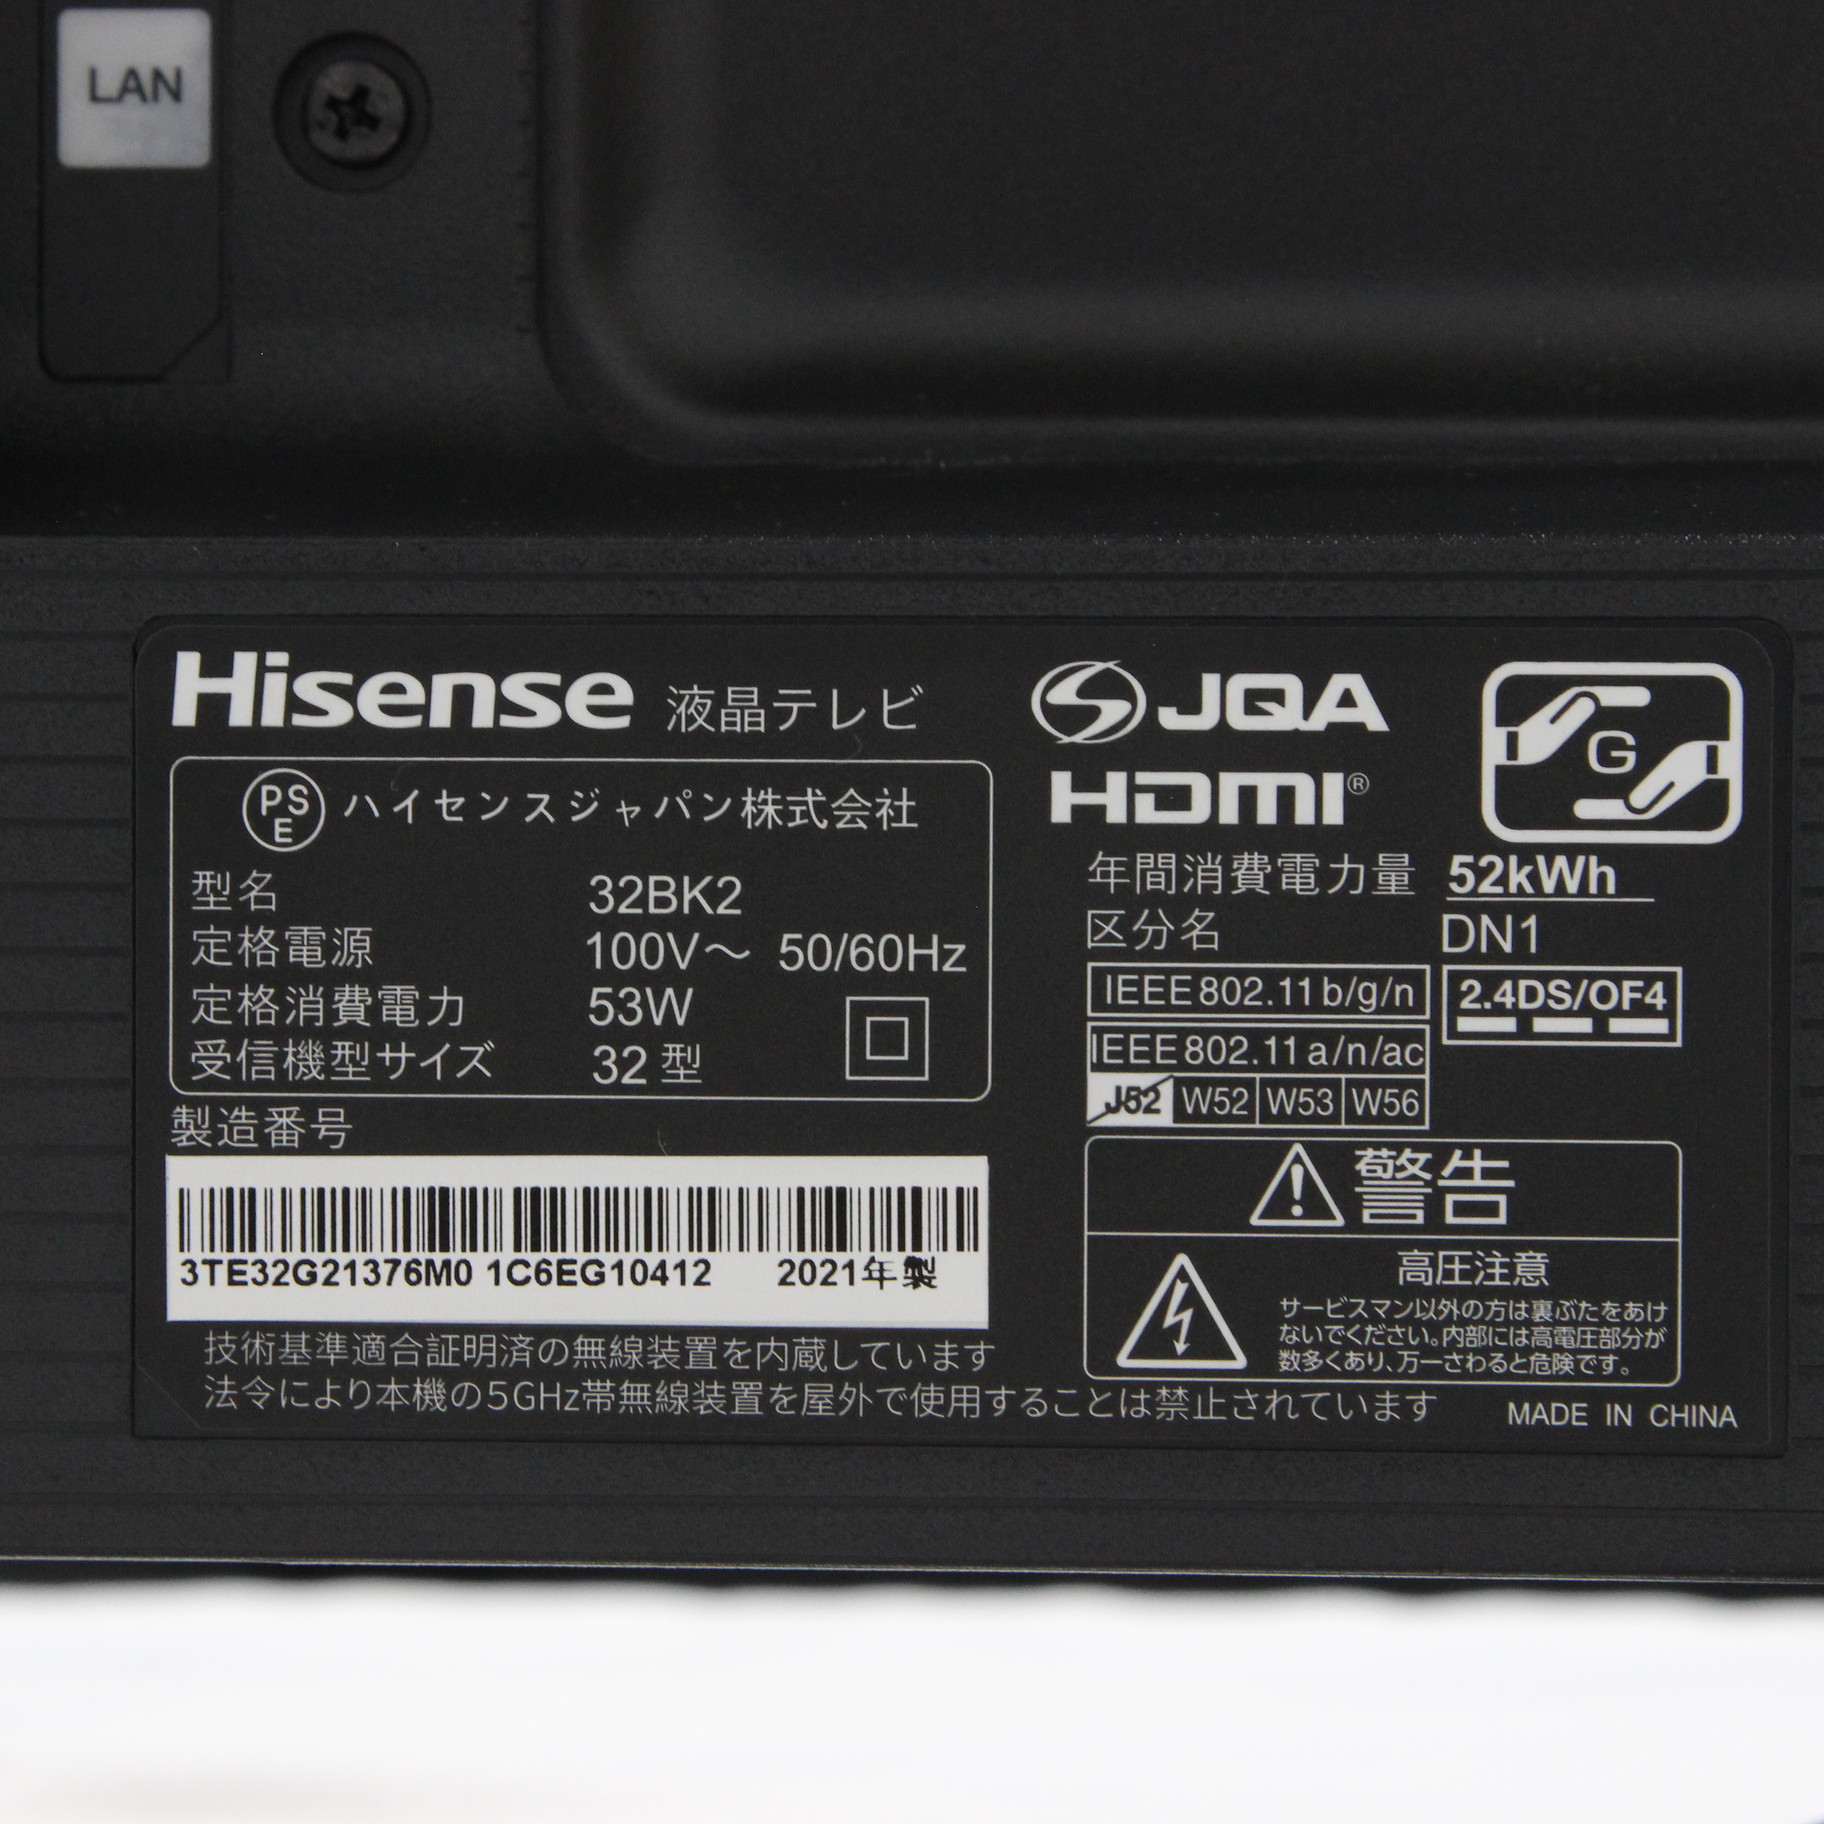 ハイセンス Hisense 液晶テレビ 32BK2 32V型  ハイビジョン YouTube対応 - 2